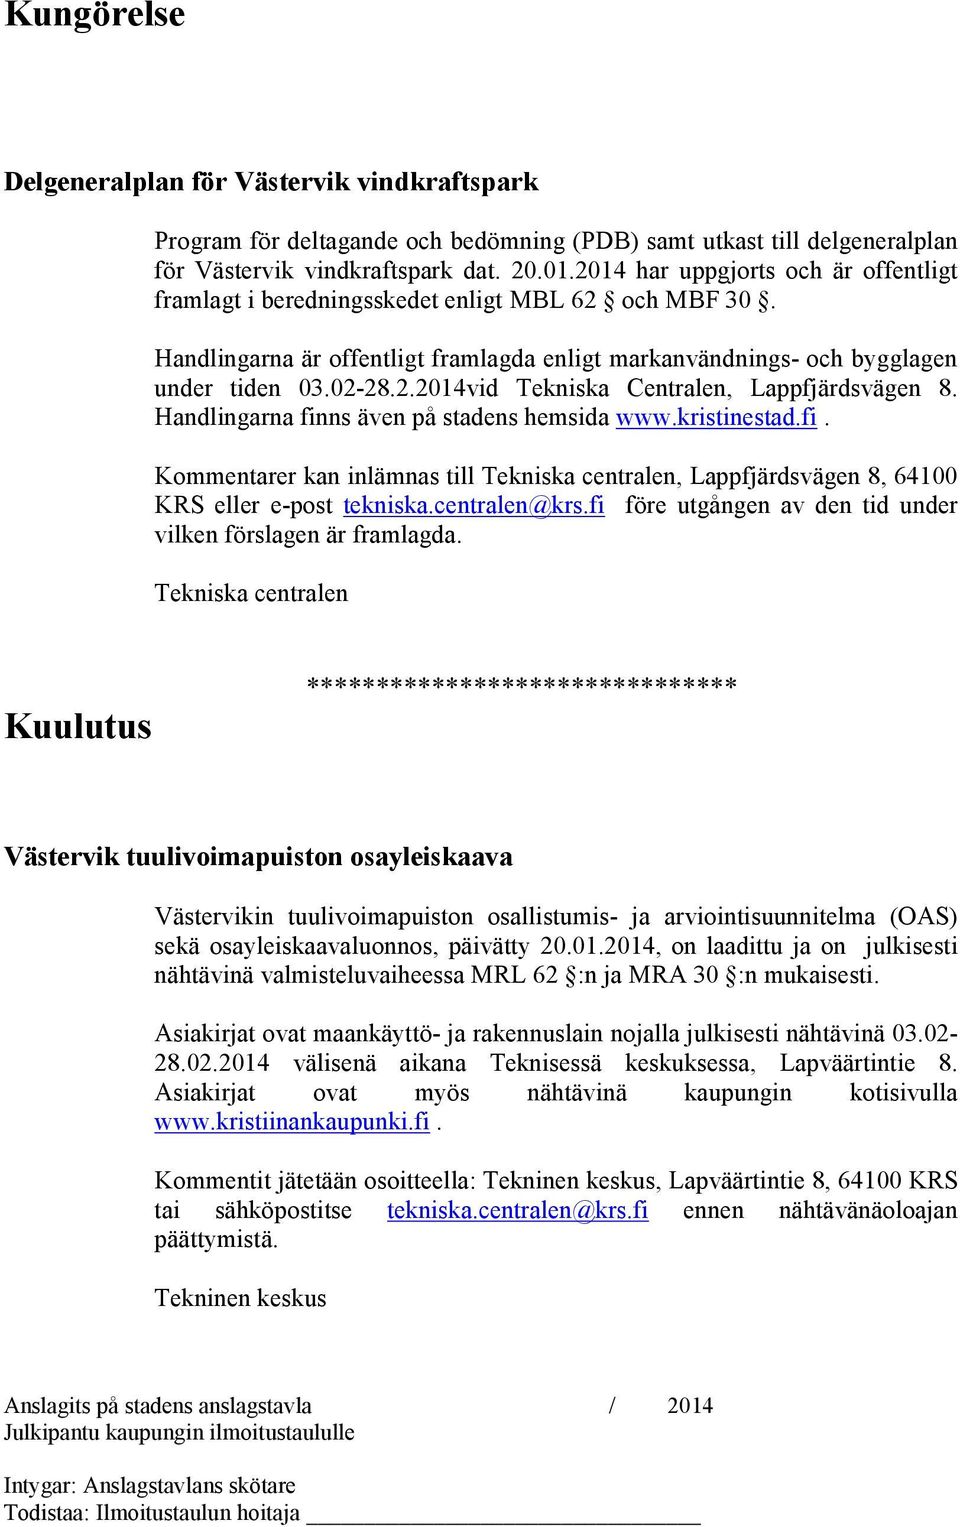 Handlingarna finns även på stadens hemsida www.kristinestad.fi. Kommentarer kan inlämnas till Tekniska centralen, Lappfjärdsvägen 8, 64100 KRS eller e-post tekniska.centralen@krs.